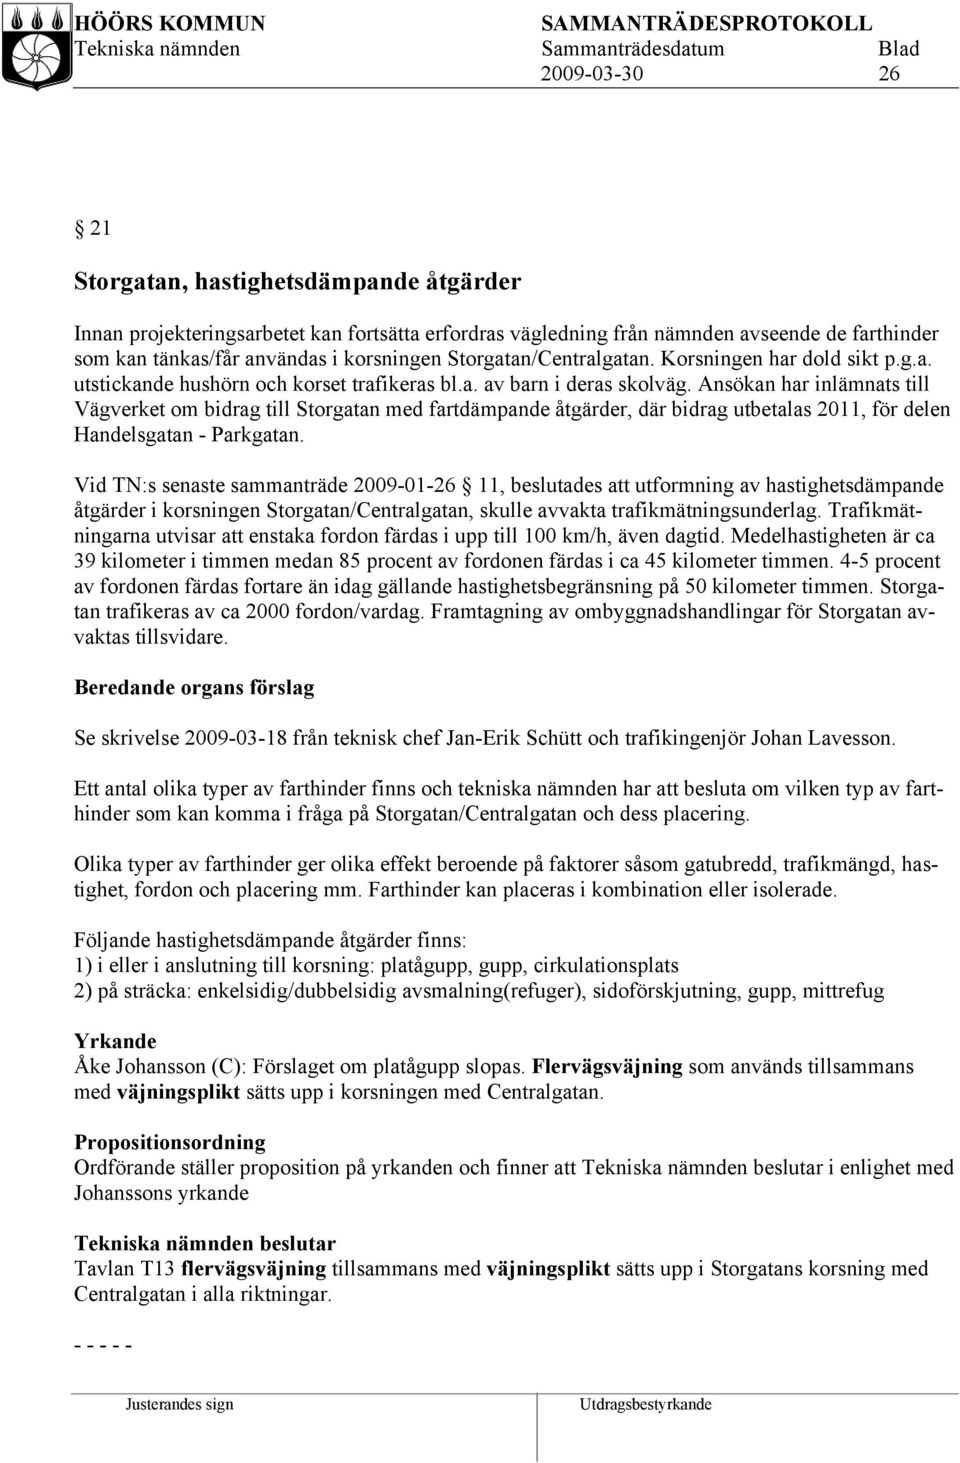 Ansökan har inlämnats till Vägverket om bidrag till Storgatan med fartdämpande åtgärder, där bidrag utbetalas 2011, för delen Handelsgatan - Parkgatan.